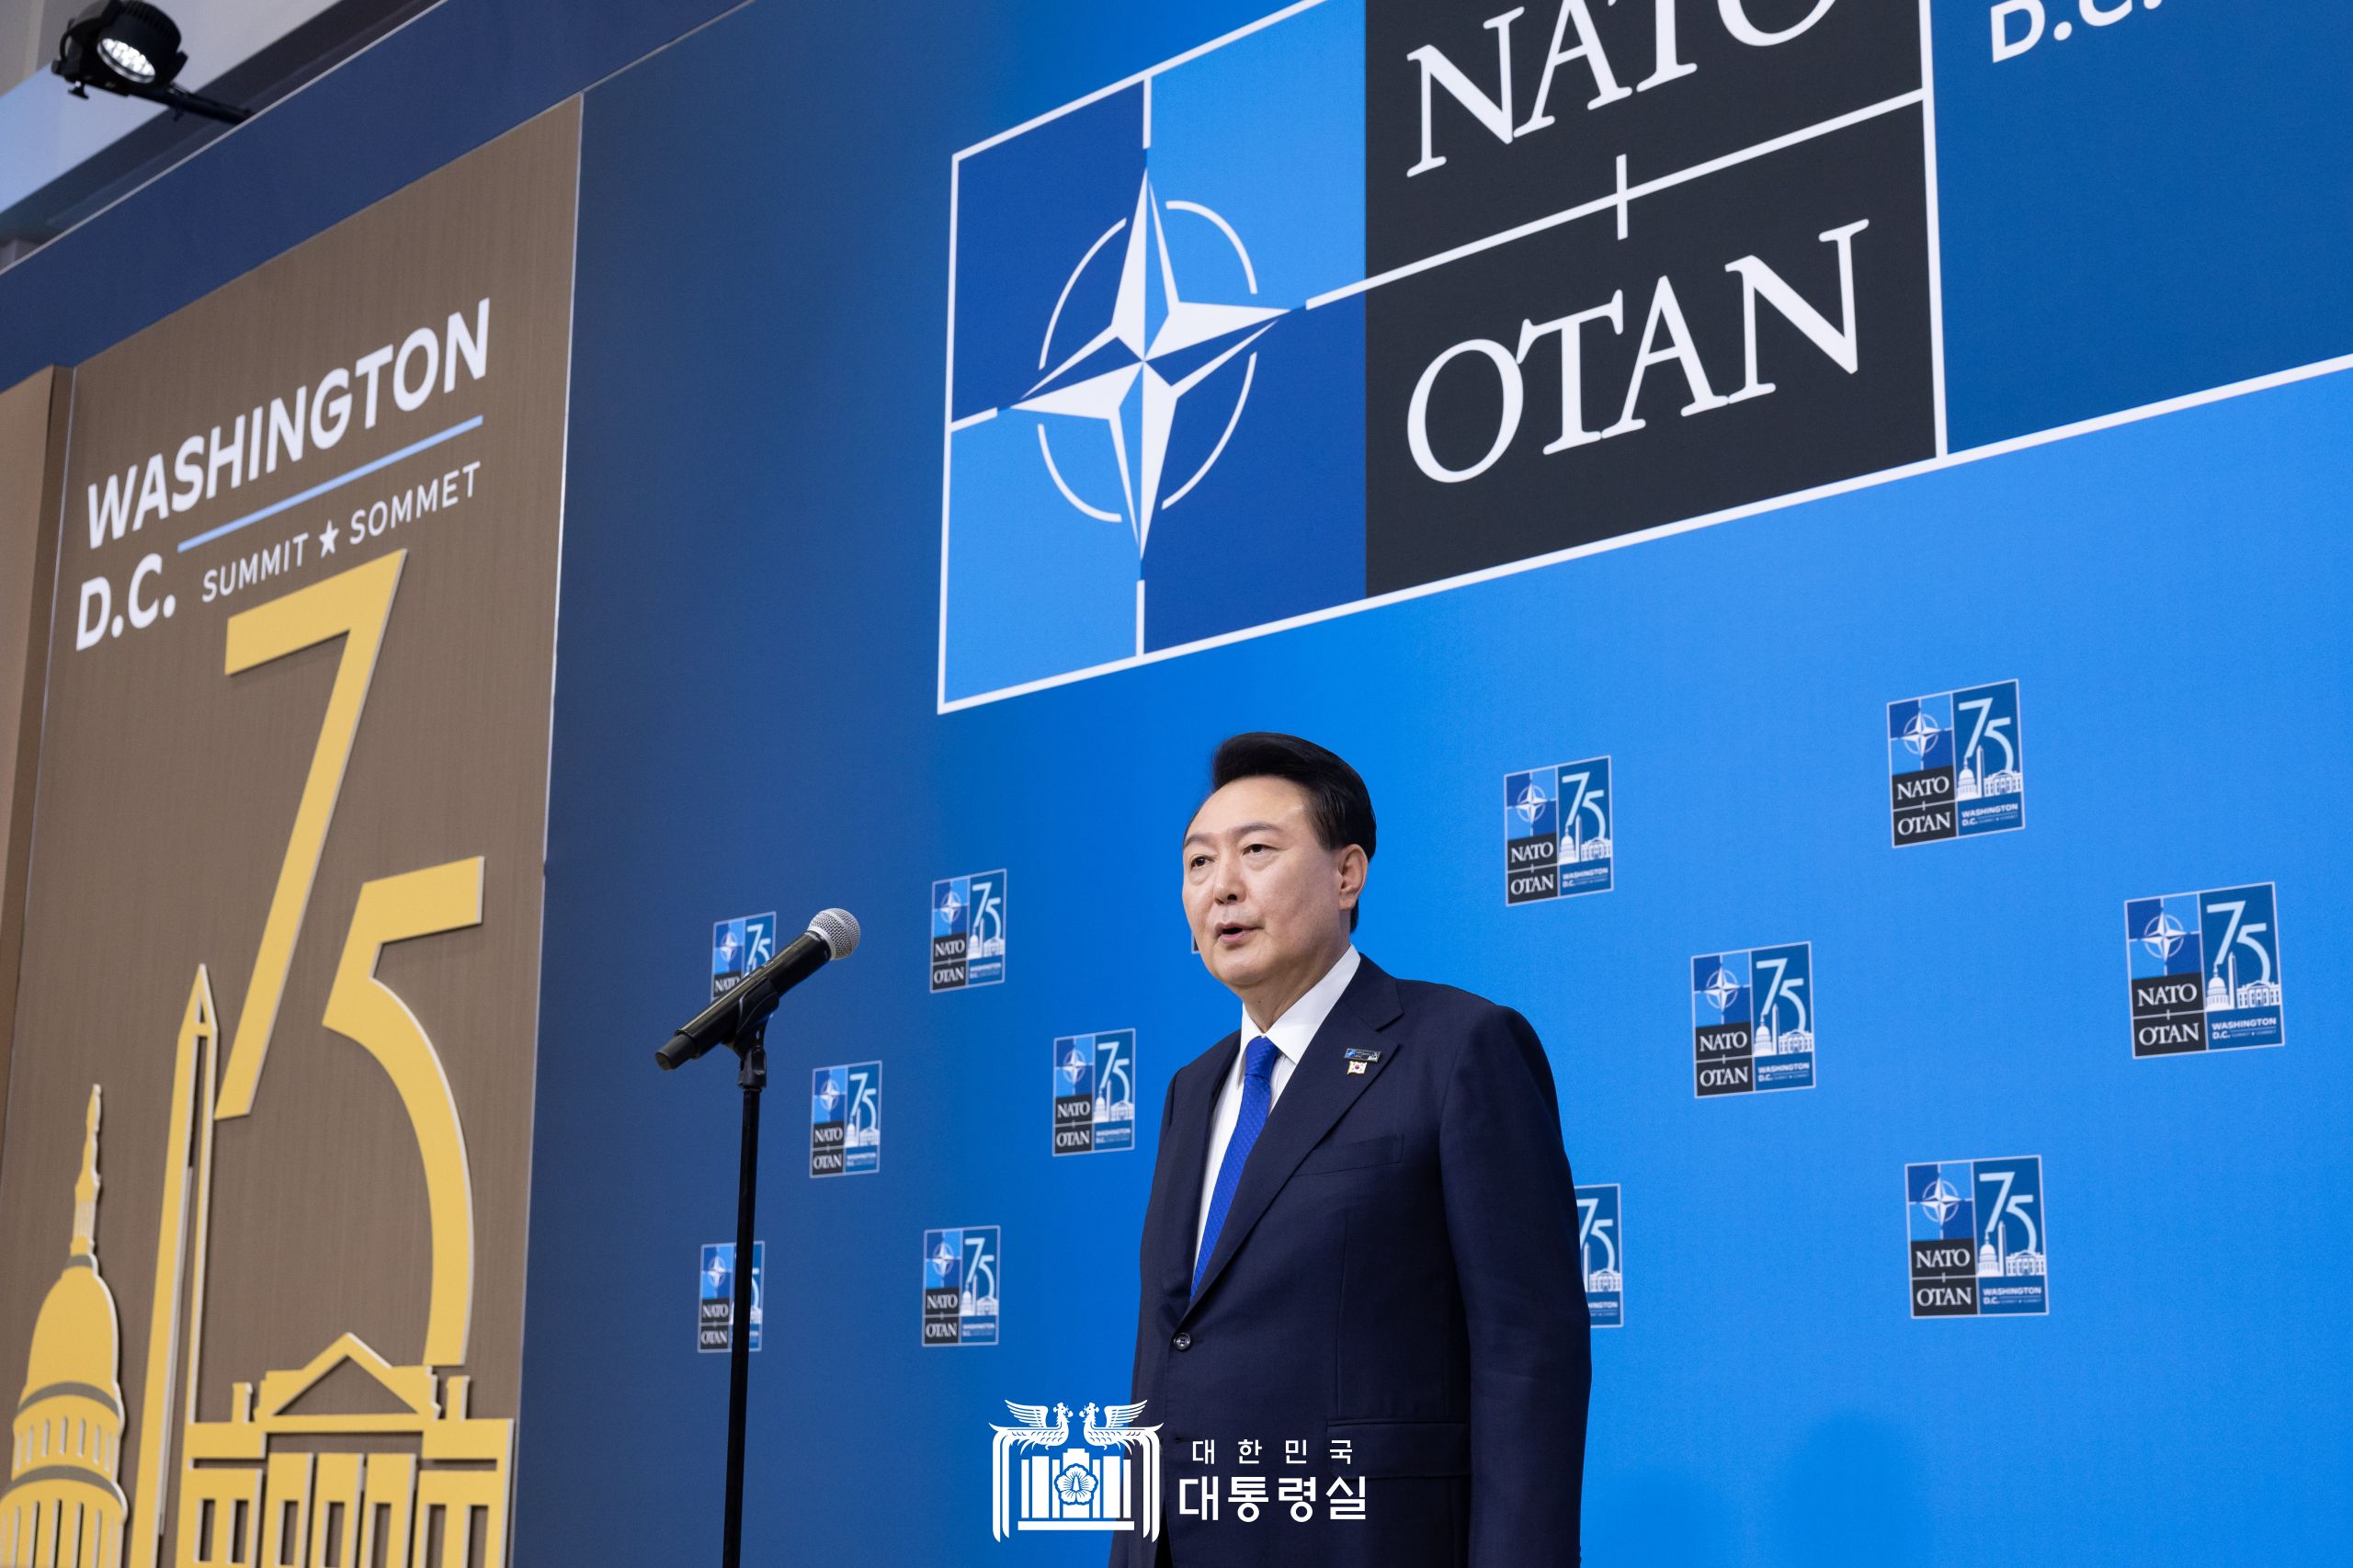 윤석열 대통령, NATO 정상회의 도어스테핑 발언